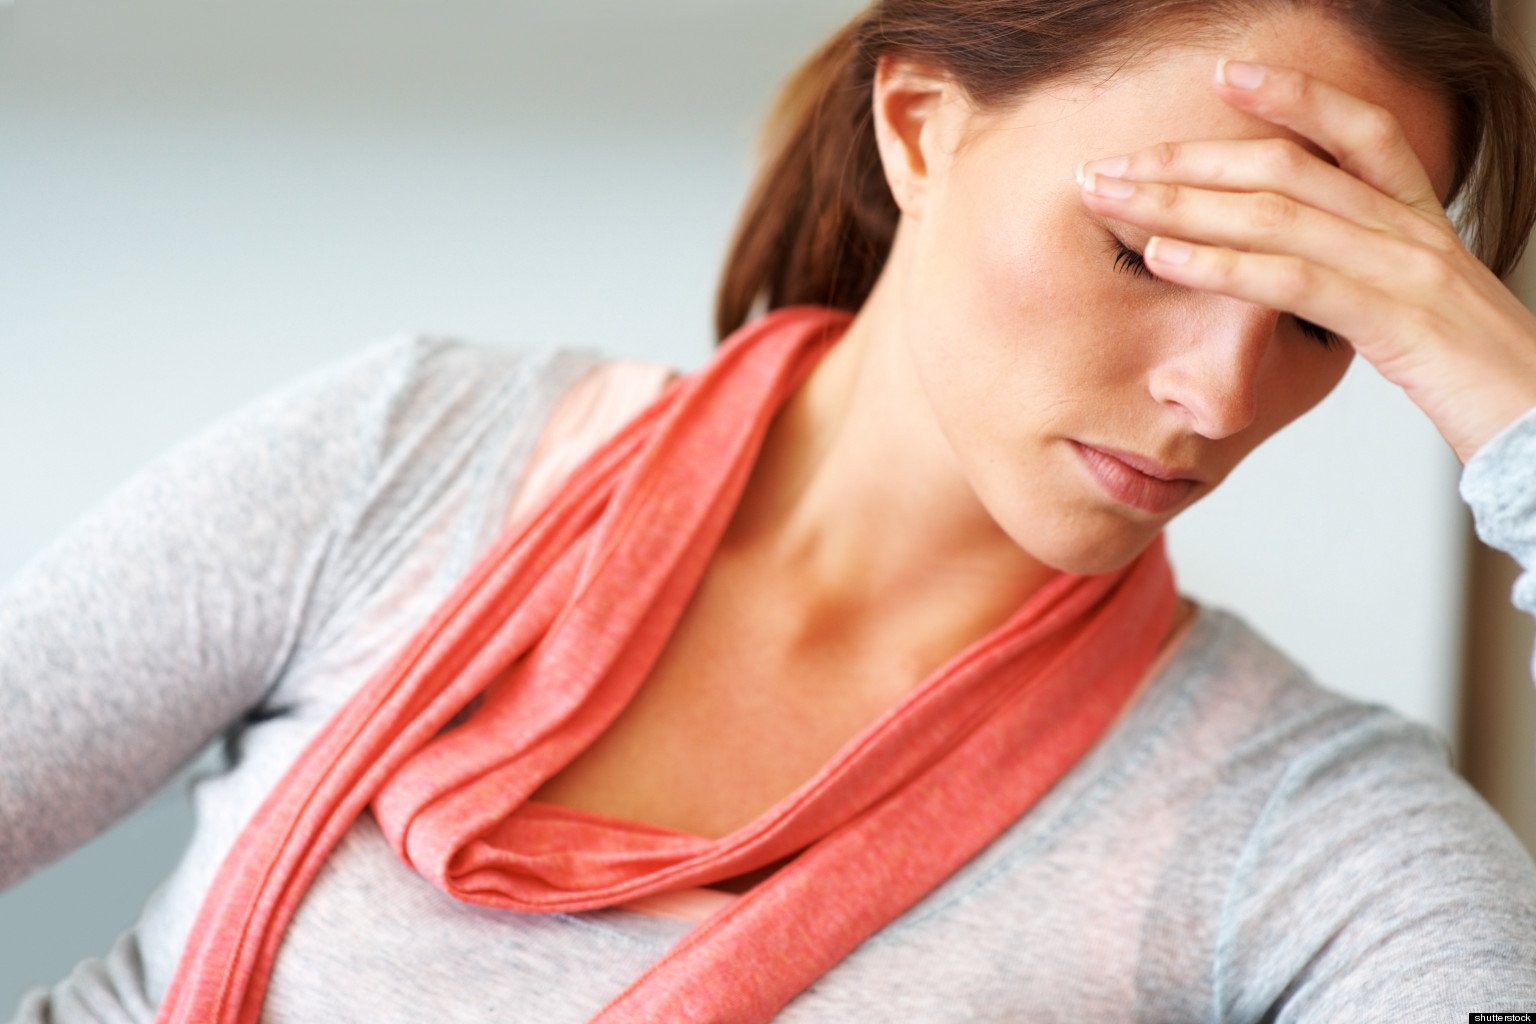 Έρευνα: Τα επαγγέλματα που προκαλούν το μεγαλύτερο άγχος